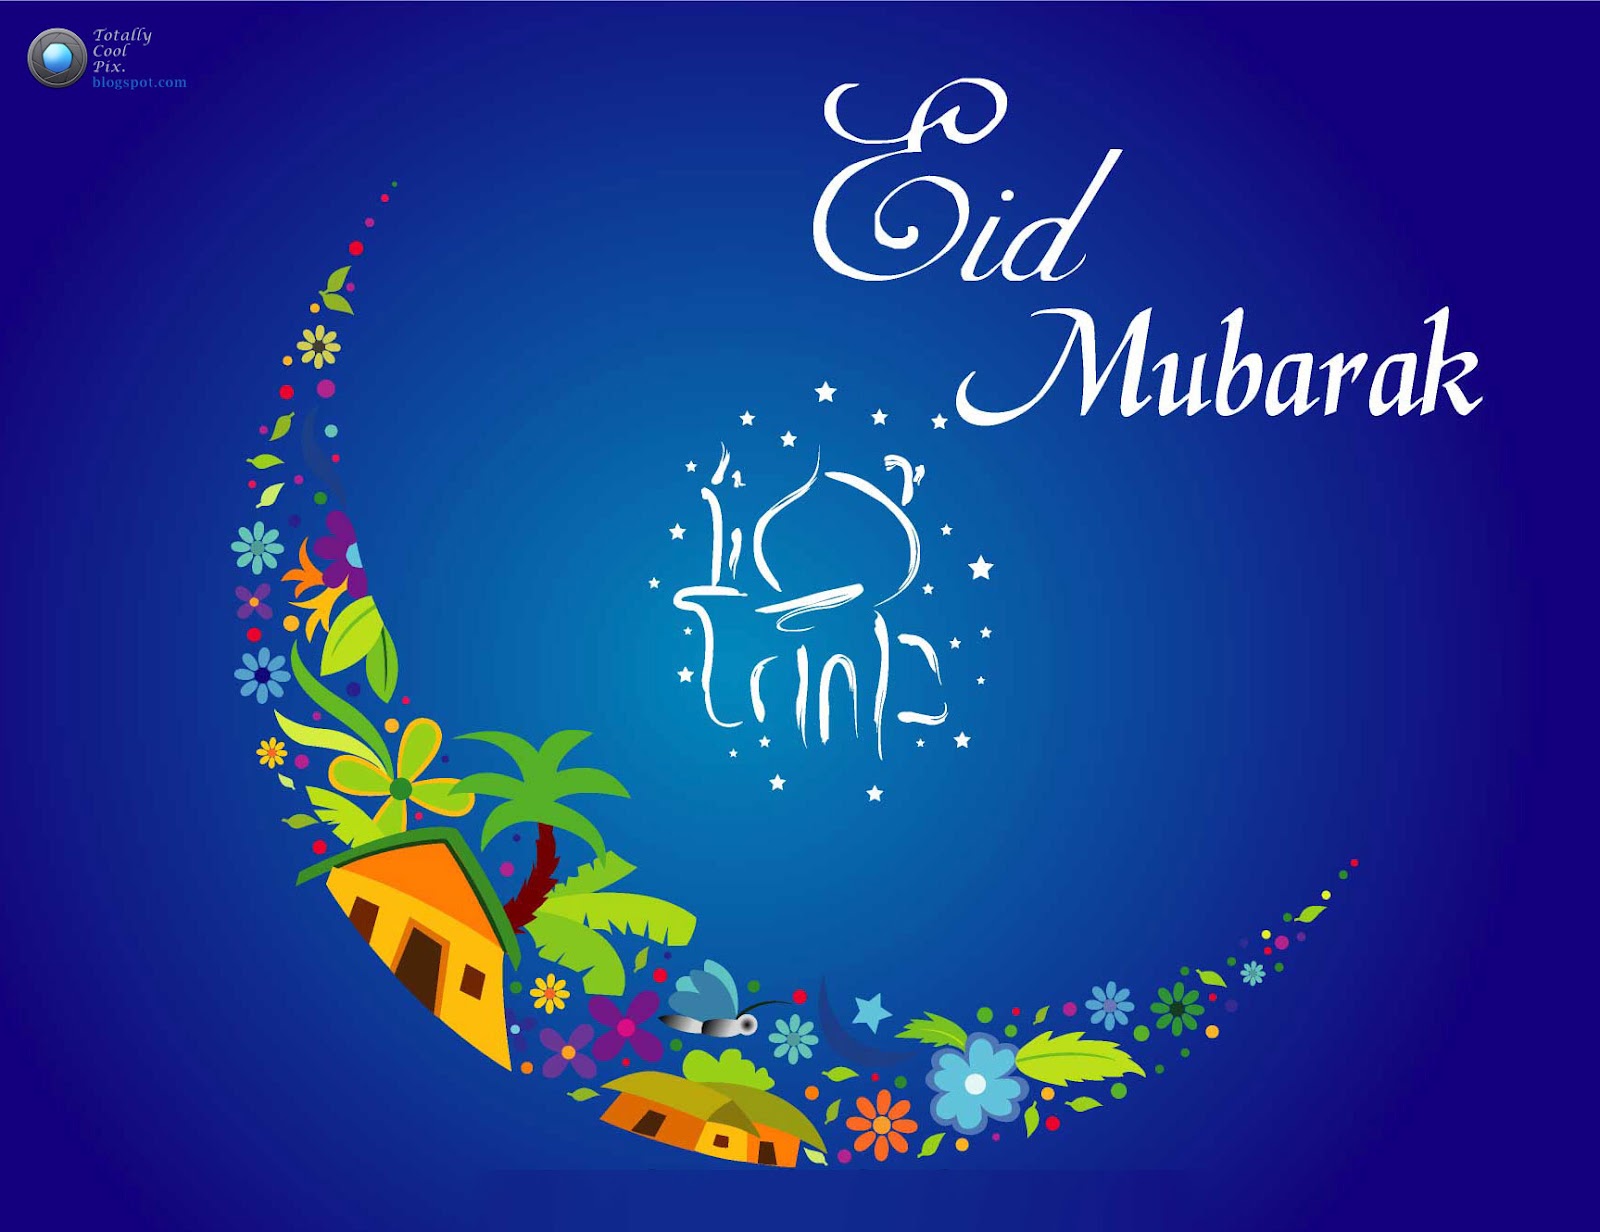 https://blogger.googleusercontent.com/img/b/R29vZ2xl/AVvXsEjv8siJPLxjn4kDvOLiR35mc1Q8dZIQdusvJQqWtc0SL3fLPkeveO0TWxJTN98kcYRdreNABLzJ3yjdkRSHEjOqDhOMPqwc0DaWnqzmg5Ed2K9ukrsiEkpgYcZ1sCQ8FiinAjTtjLM20gQ/s1600/Top-60-Eid-ul-Fitr-Hd-Wallpapers-and-Eid-Mubarak-Greetings-Cards-2012-01.jpg